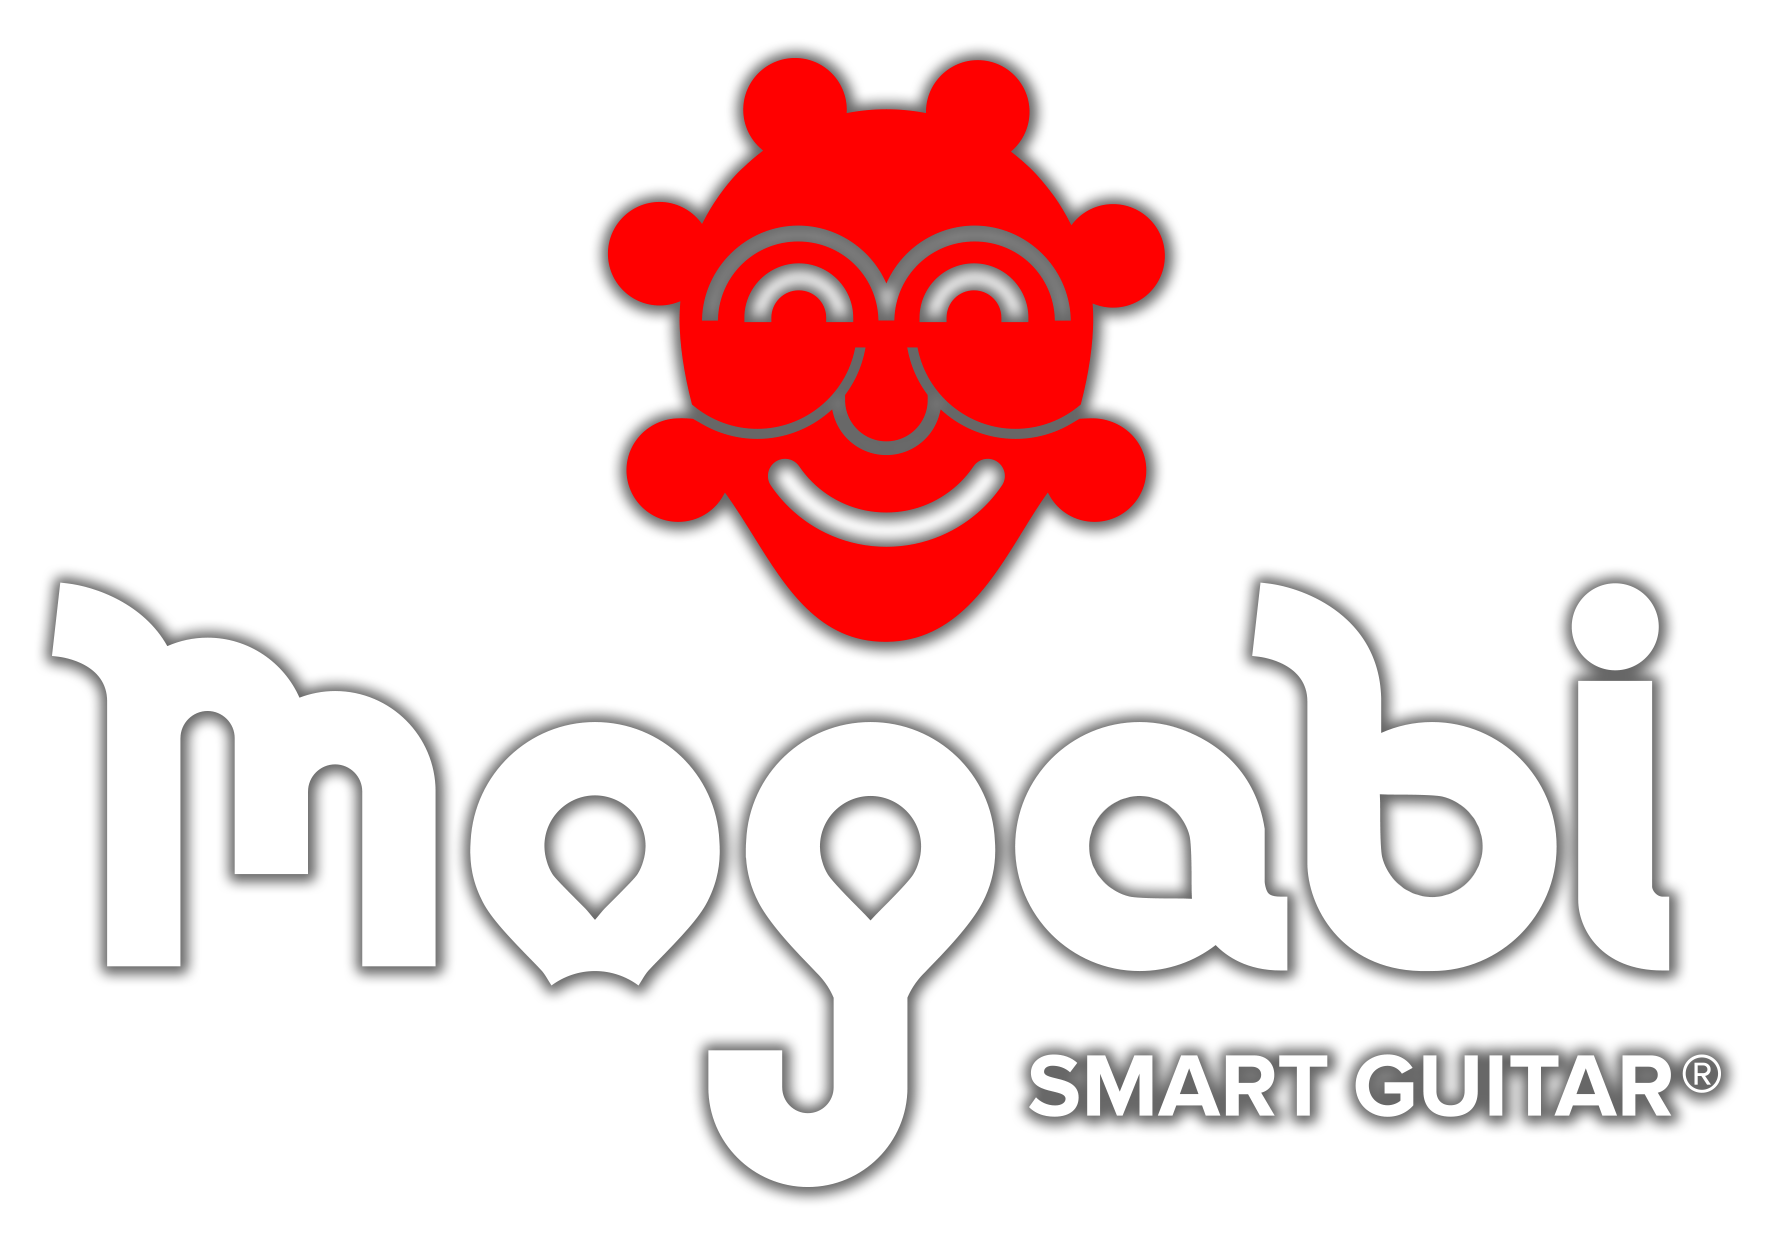 Global Mogabi